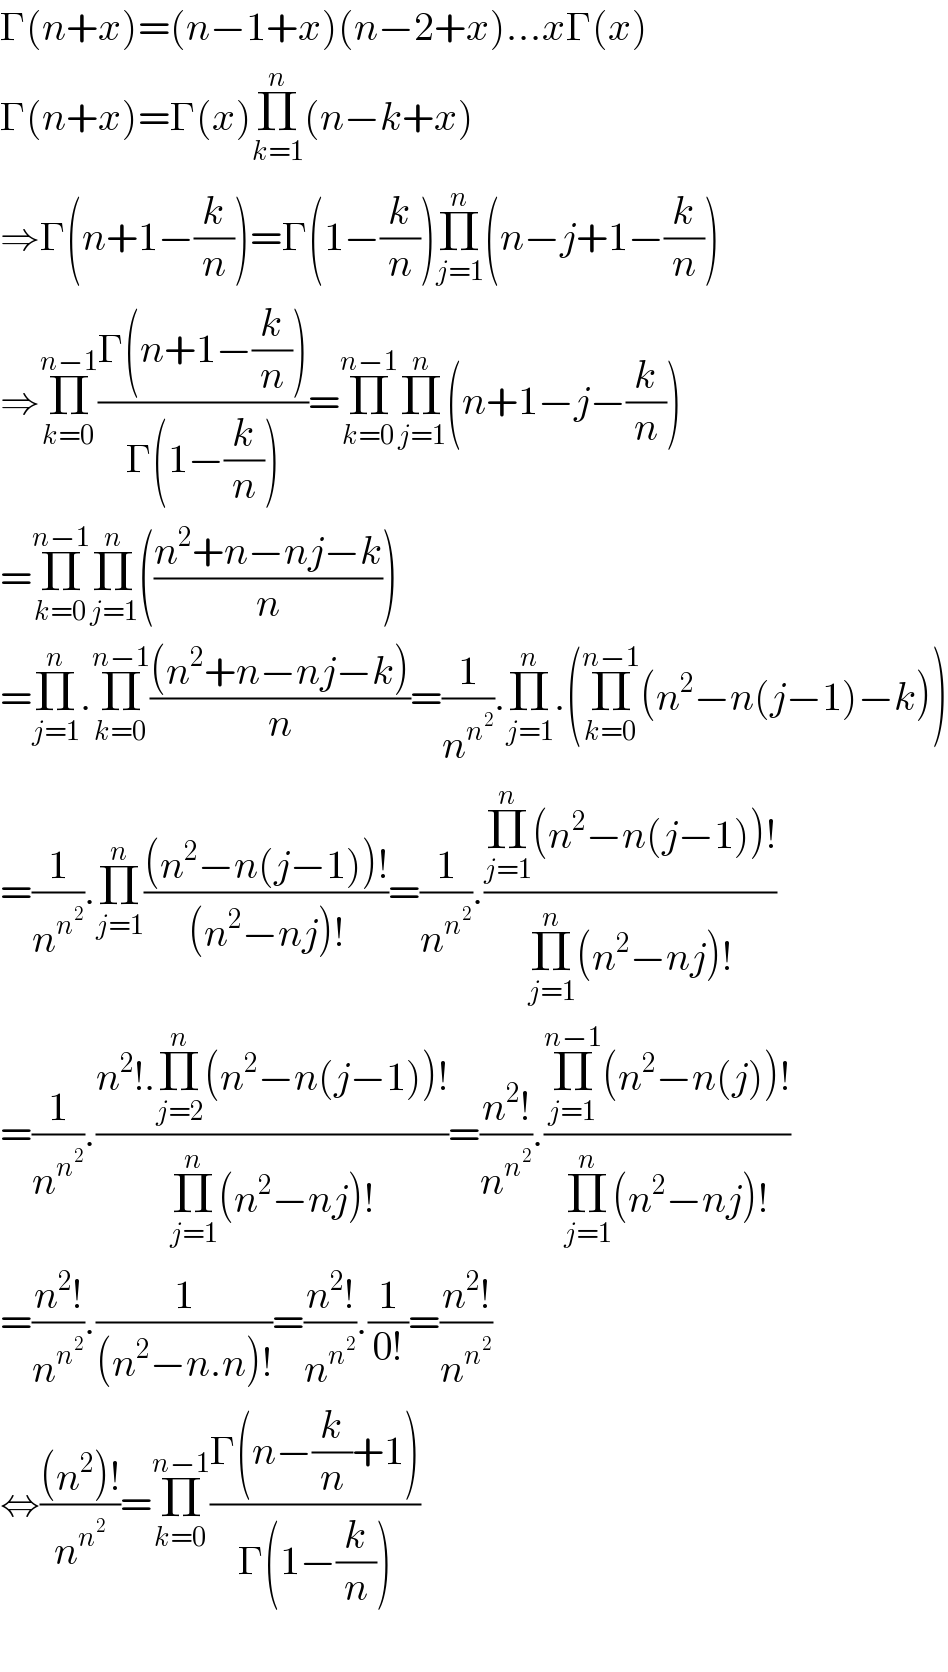 Γ(n+x)=(n−1+x)(n−2+x)...xΓ(x)    Γ(n+x)=Γ(x)Π_(k=1) ^n (n−k+x)  ⇒Γ(n+1−(k/n))=Γ(1−(k/n))Π_(j=1) ^n (n−j+1−(k/n))  ⇒Π_(k=0) ^(n−1) ((Γ(n+1−(k/n)))/(Γ(1−(k/n))))=Π_(k=0) ^(n−1) Π_(j=1) ^n (n+1−j−(k/n))  =Π_(k=0) ^(n−1) Π_(j=1) ^n (((n^2 +n−nj−k)/n))  =Π_(j=1) ^n .Π_(k=0) ^(n−1) (((n^2 +n−nj−k))/n)=(1/n^n^2  ).Π_(j=1) ^n .(Π_(k=0) ^(n−1) (n^2 −n(j−1)−k))  =(1/n^n^2  ).Π_(j=1) ^n (((n^2 −n(j−1))!)/((n^2 −nj)!))=(1/n^n^2  ).((Π_(j=1) ^n (n^2 −n(j−1))!)/(Π_(j=1) ^n (n^2 −nj)!))  =(1/n^n^2  ).((n^2 !.Π_(j=2) ^n (n^2 −n(j−1))!)/(Π_(j=1) ^n (n^2 −nj)!))=((n^2 !)/n^n^2  ).((Π_(j=1) ^(n−1) (n^2 −n(j))!)/(Π_(j=1) ^n (n^2 −nj)!))  =((n^2 !)/n^n^2  ).(1/((n^2 −n.n)!))=((n^2 !)/n^n^2  ).(1/(0!))=((n^2 !)/n^n^2  )  ⇔(((n^2 )!)/n^n^2  )=Π_(k=0) ^(n−1) ((Γ(n−(k/n)+1))/(Γ(1−(k/n))))    